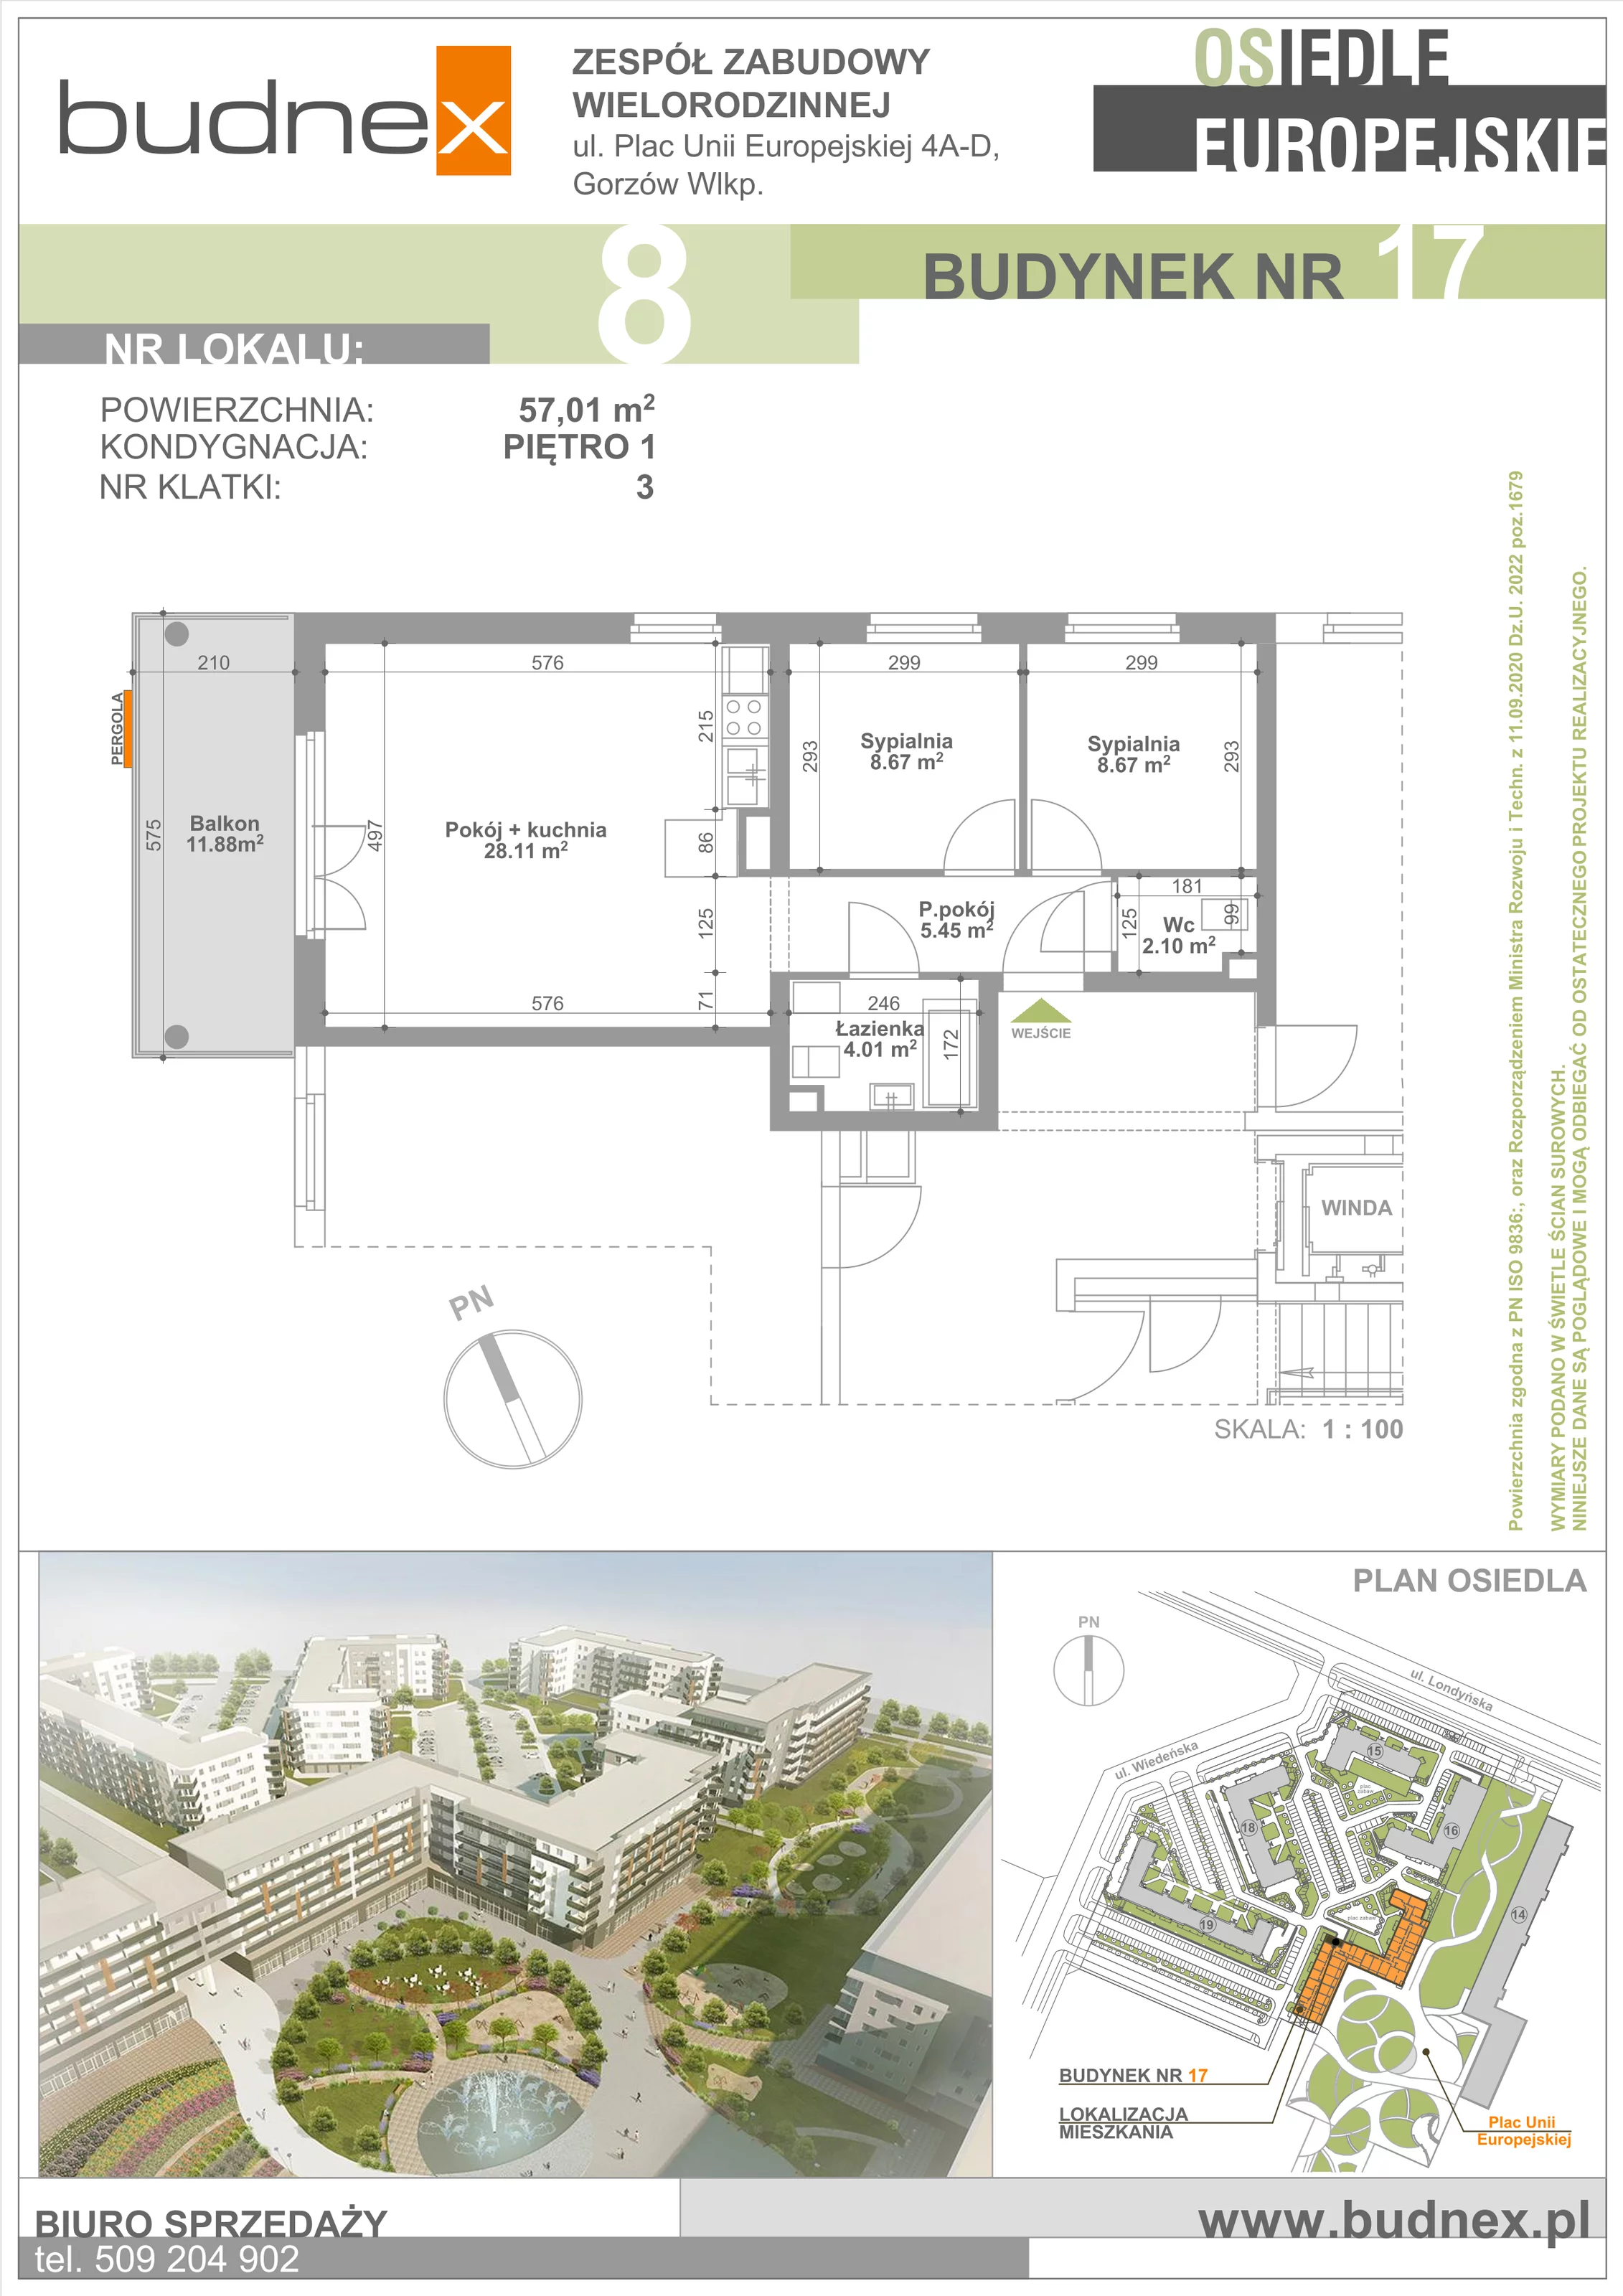 Mieszkanie 57,01 m², piętro 1, oferta nr 3/M8, Osiedle Europejskie - Budynek 17, Gorzów Wielkopolski, Plac Unii Europejskiej 4A-D